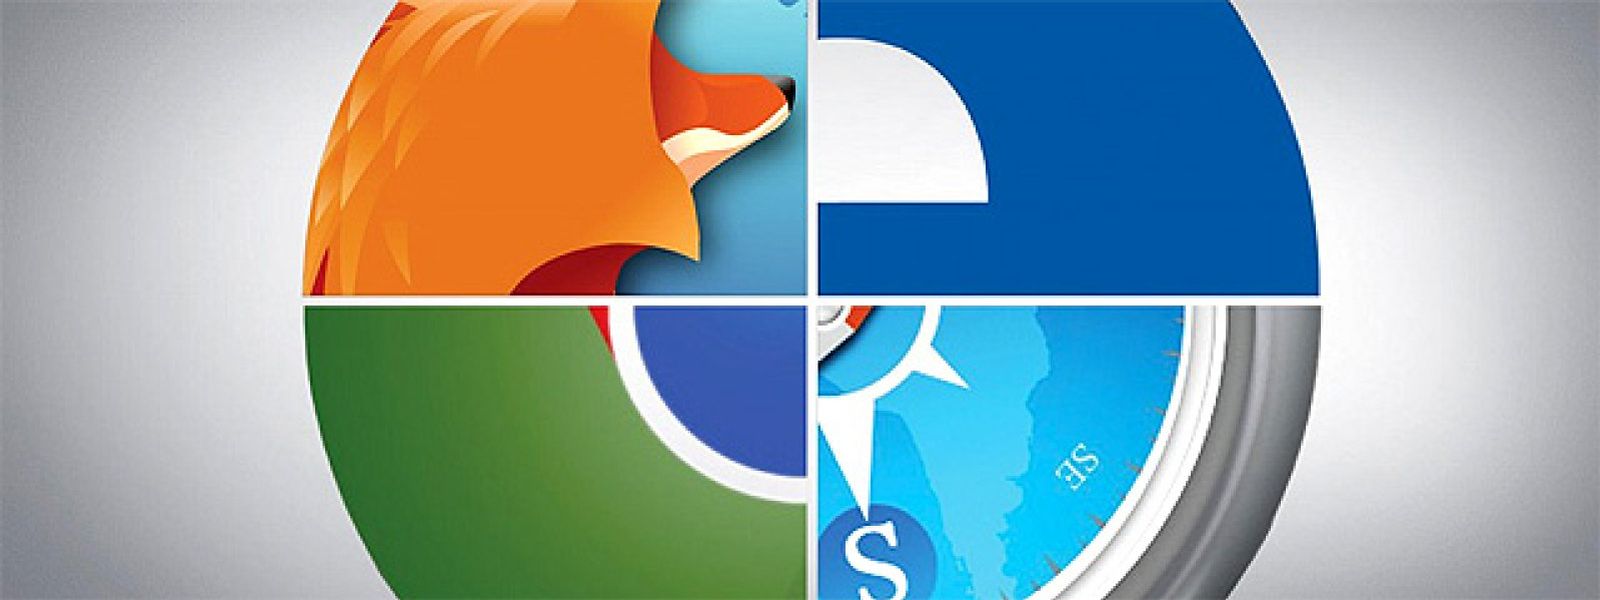 Foto: Firefox recupera el trono como navegador más veloz del mercado